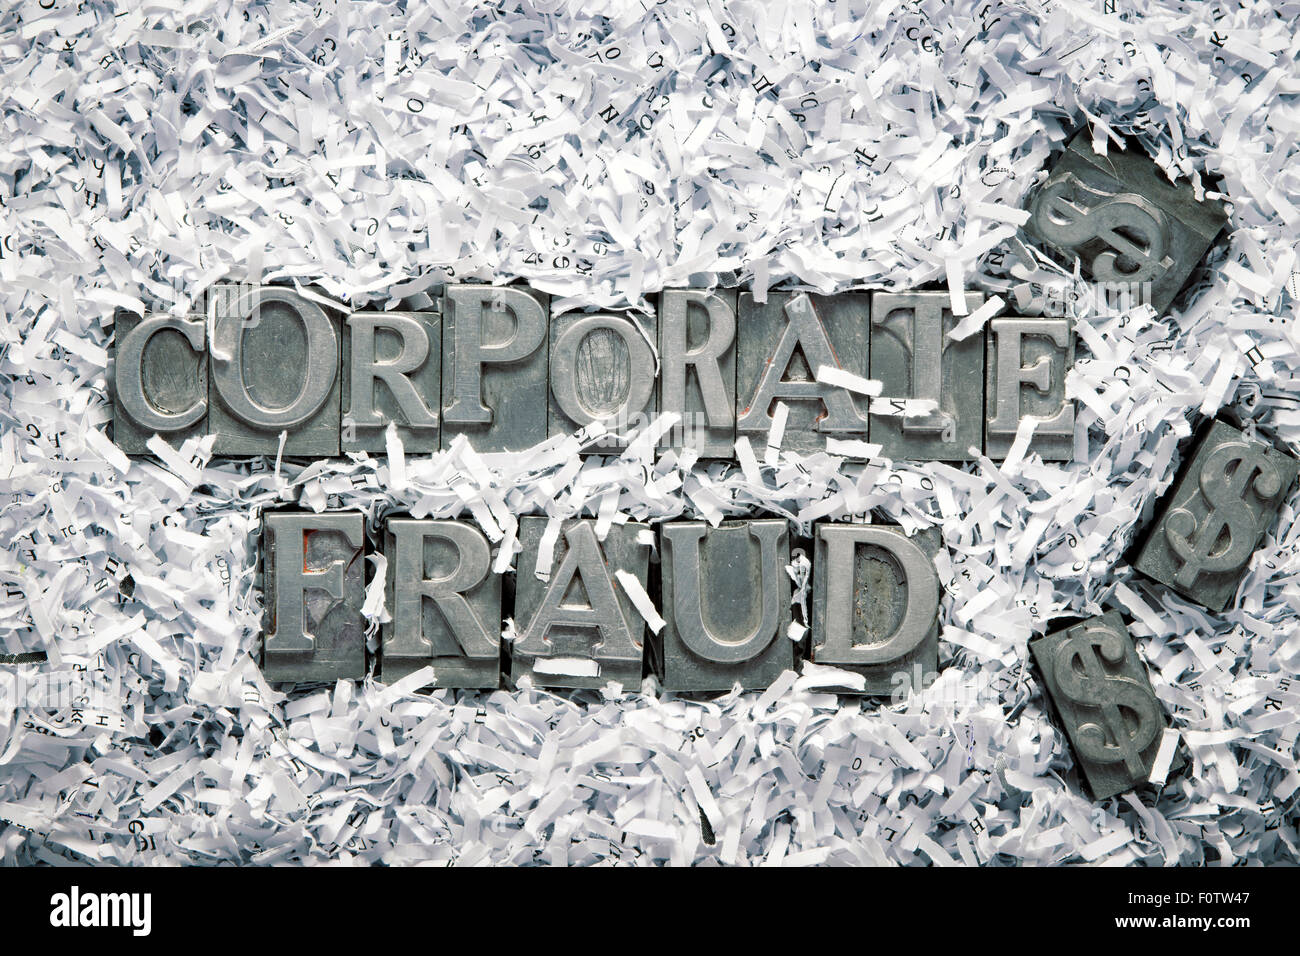 La fraude commise par une phrase faite de l'intérieur type letterpress métallique de papier déchiqueté heap Banque D'Images